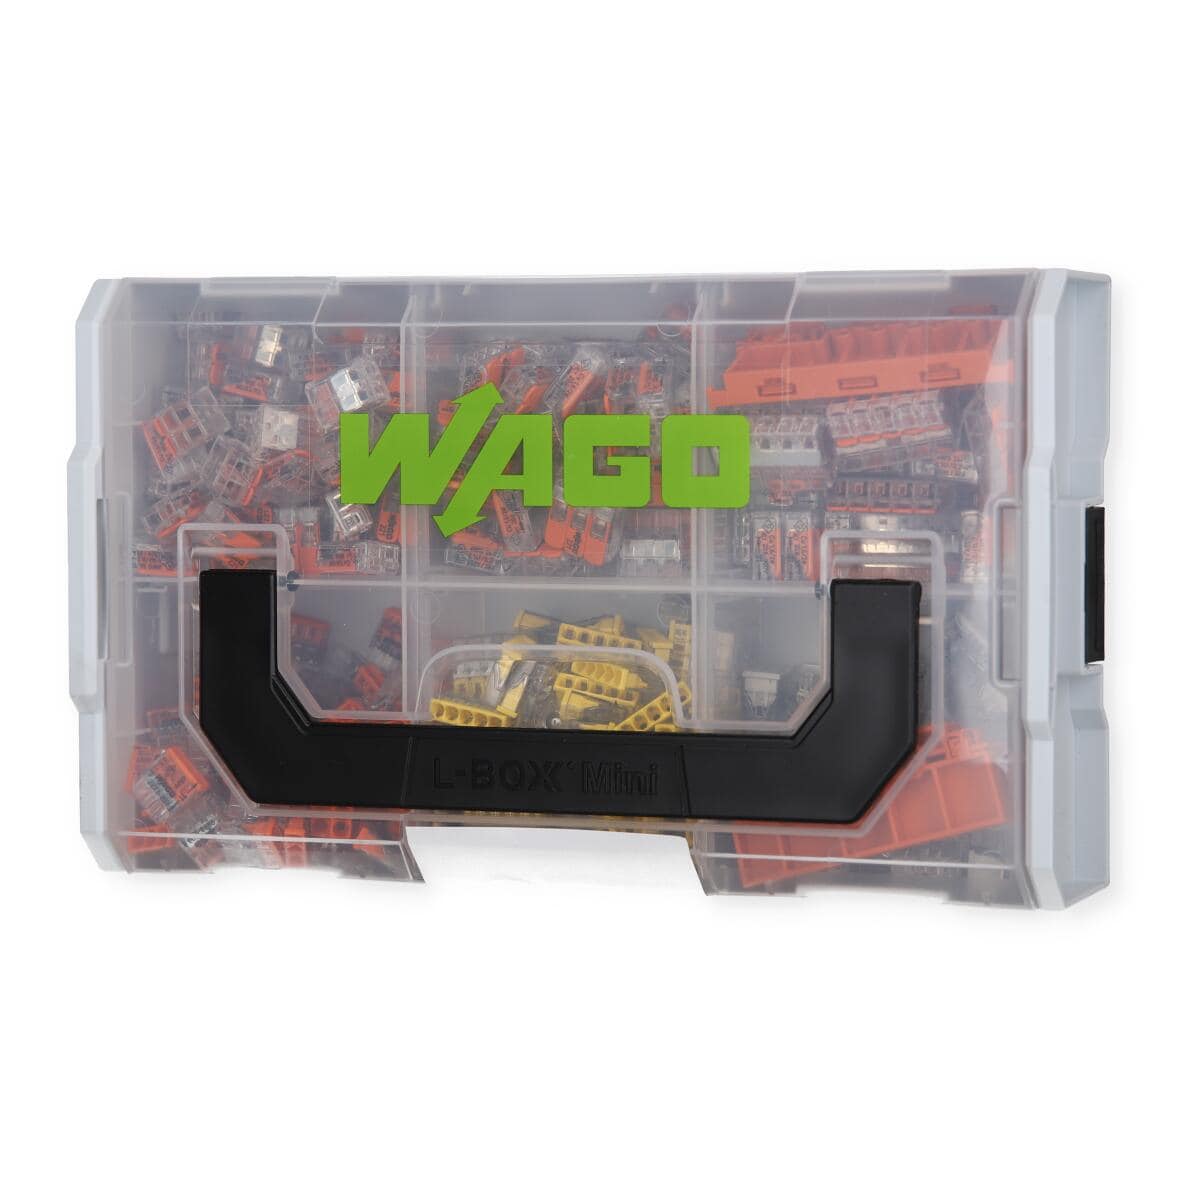 WAGO 250-608: Klemmleiste mit Betätigungsdrückern, RM 7,5 mm, 17,5A, 8-pol  bei reichelt elektronik